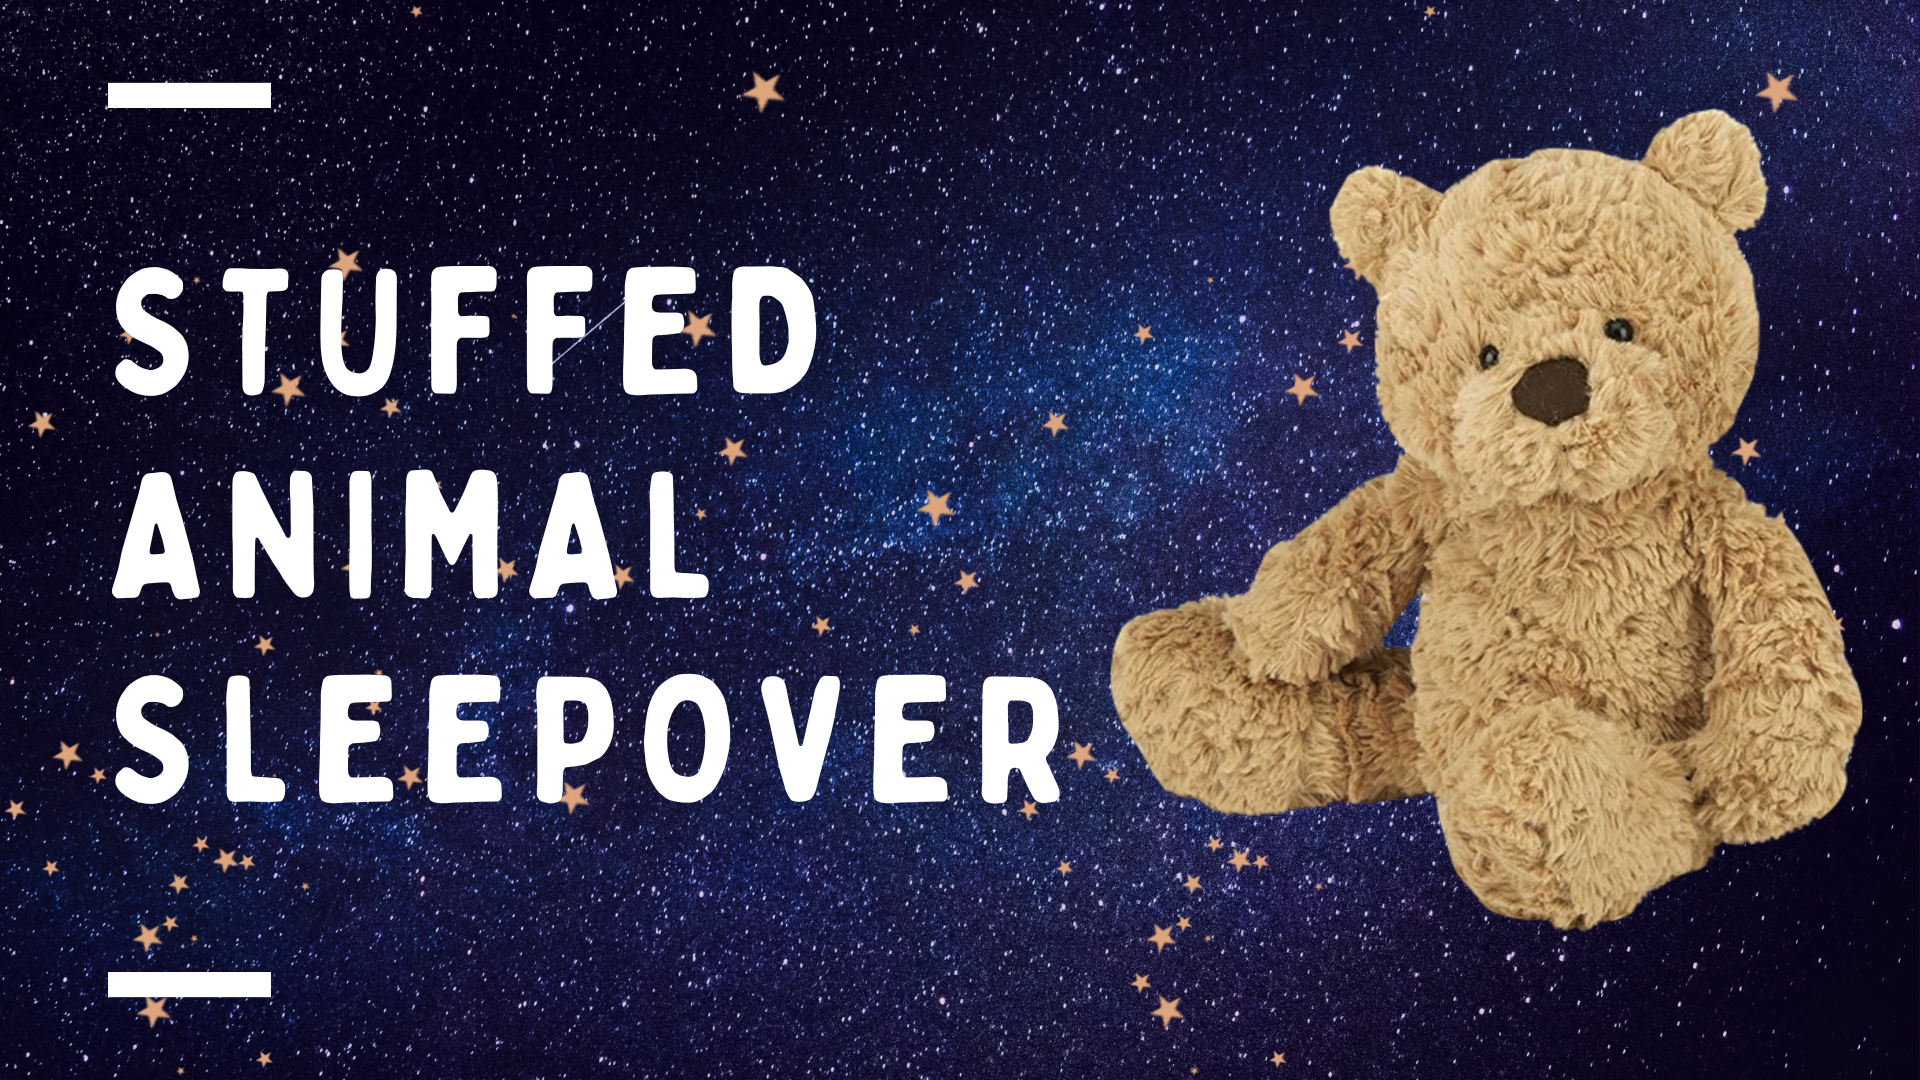 Stuffed animal sleepover